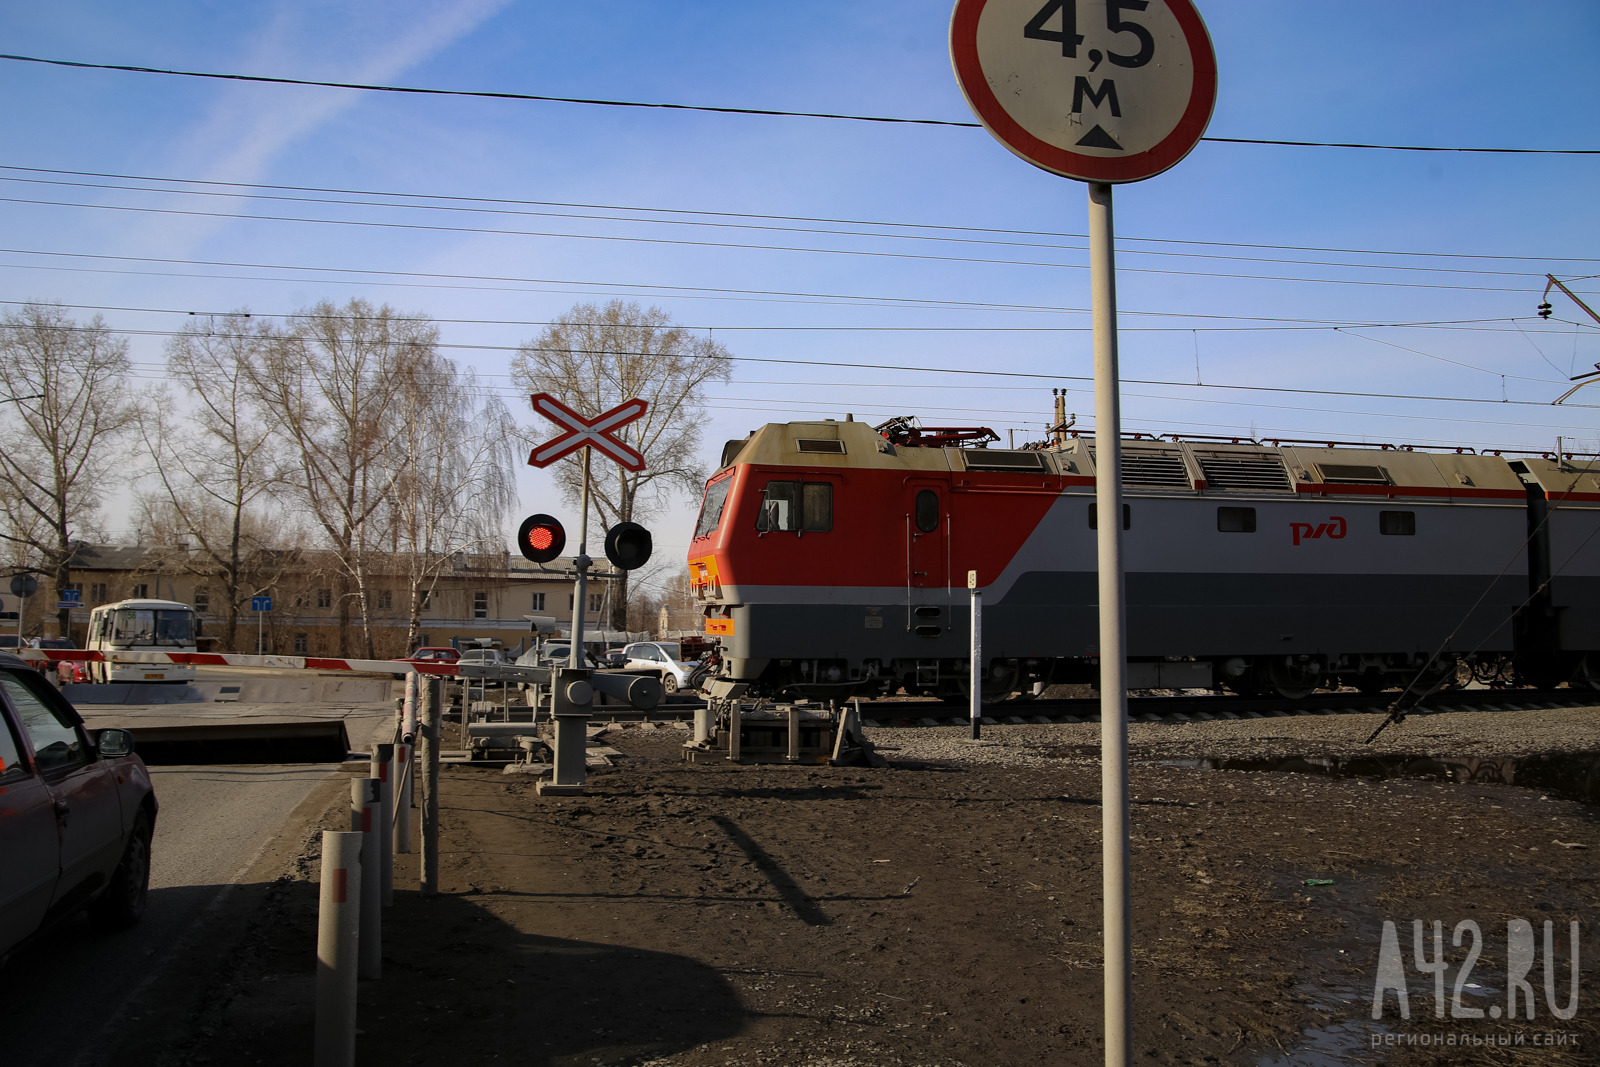 В Кузбассе два железнодорожника успешно сдали тесты и были задержаны сотрудниками ФСБ